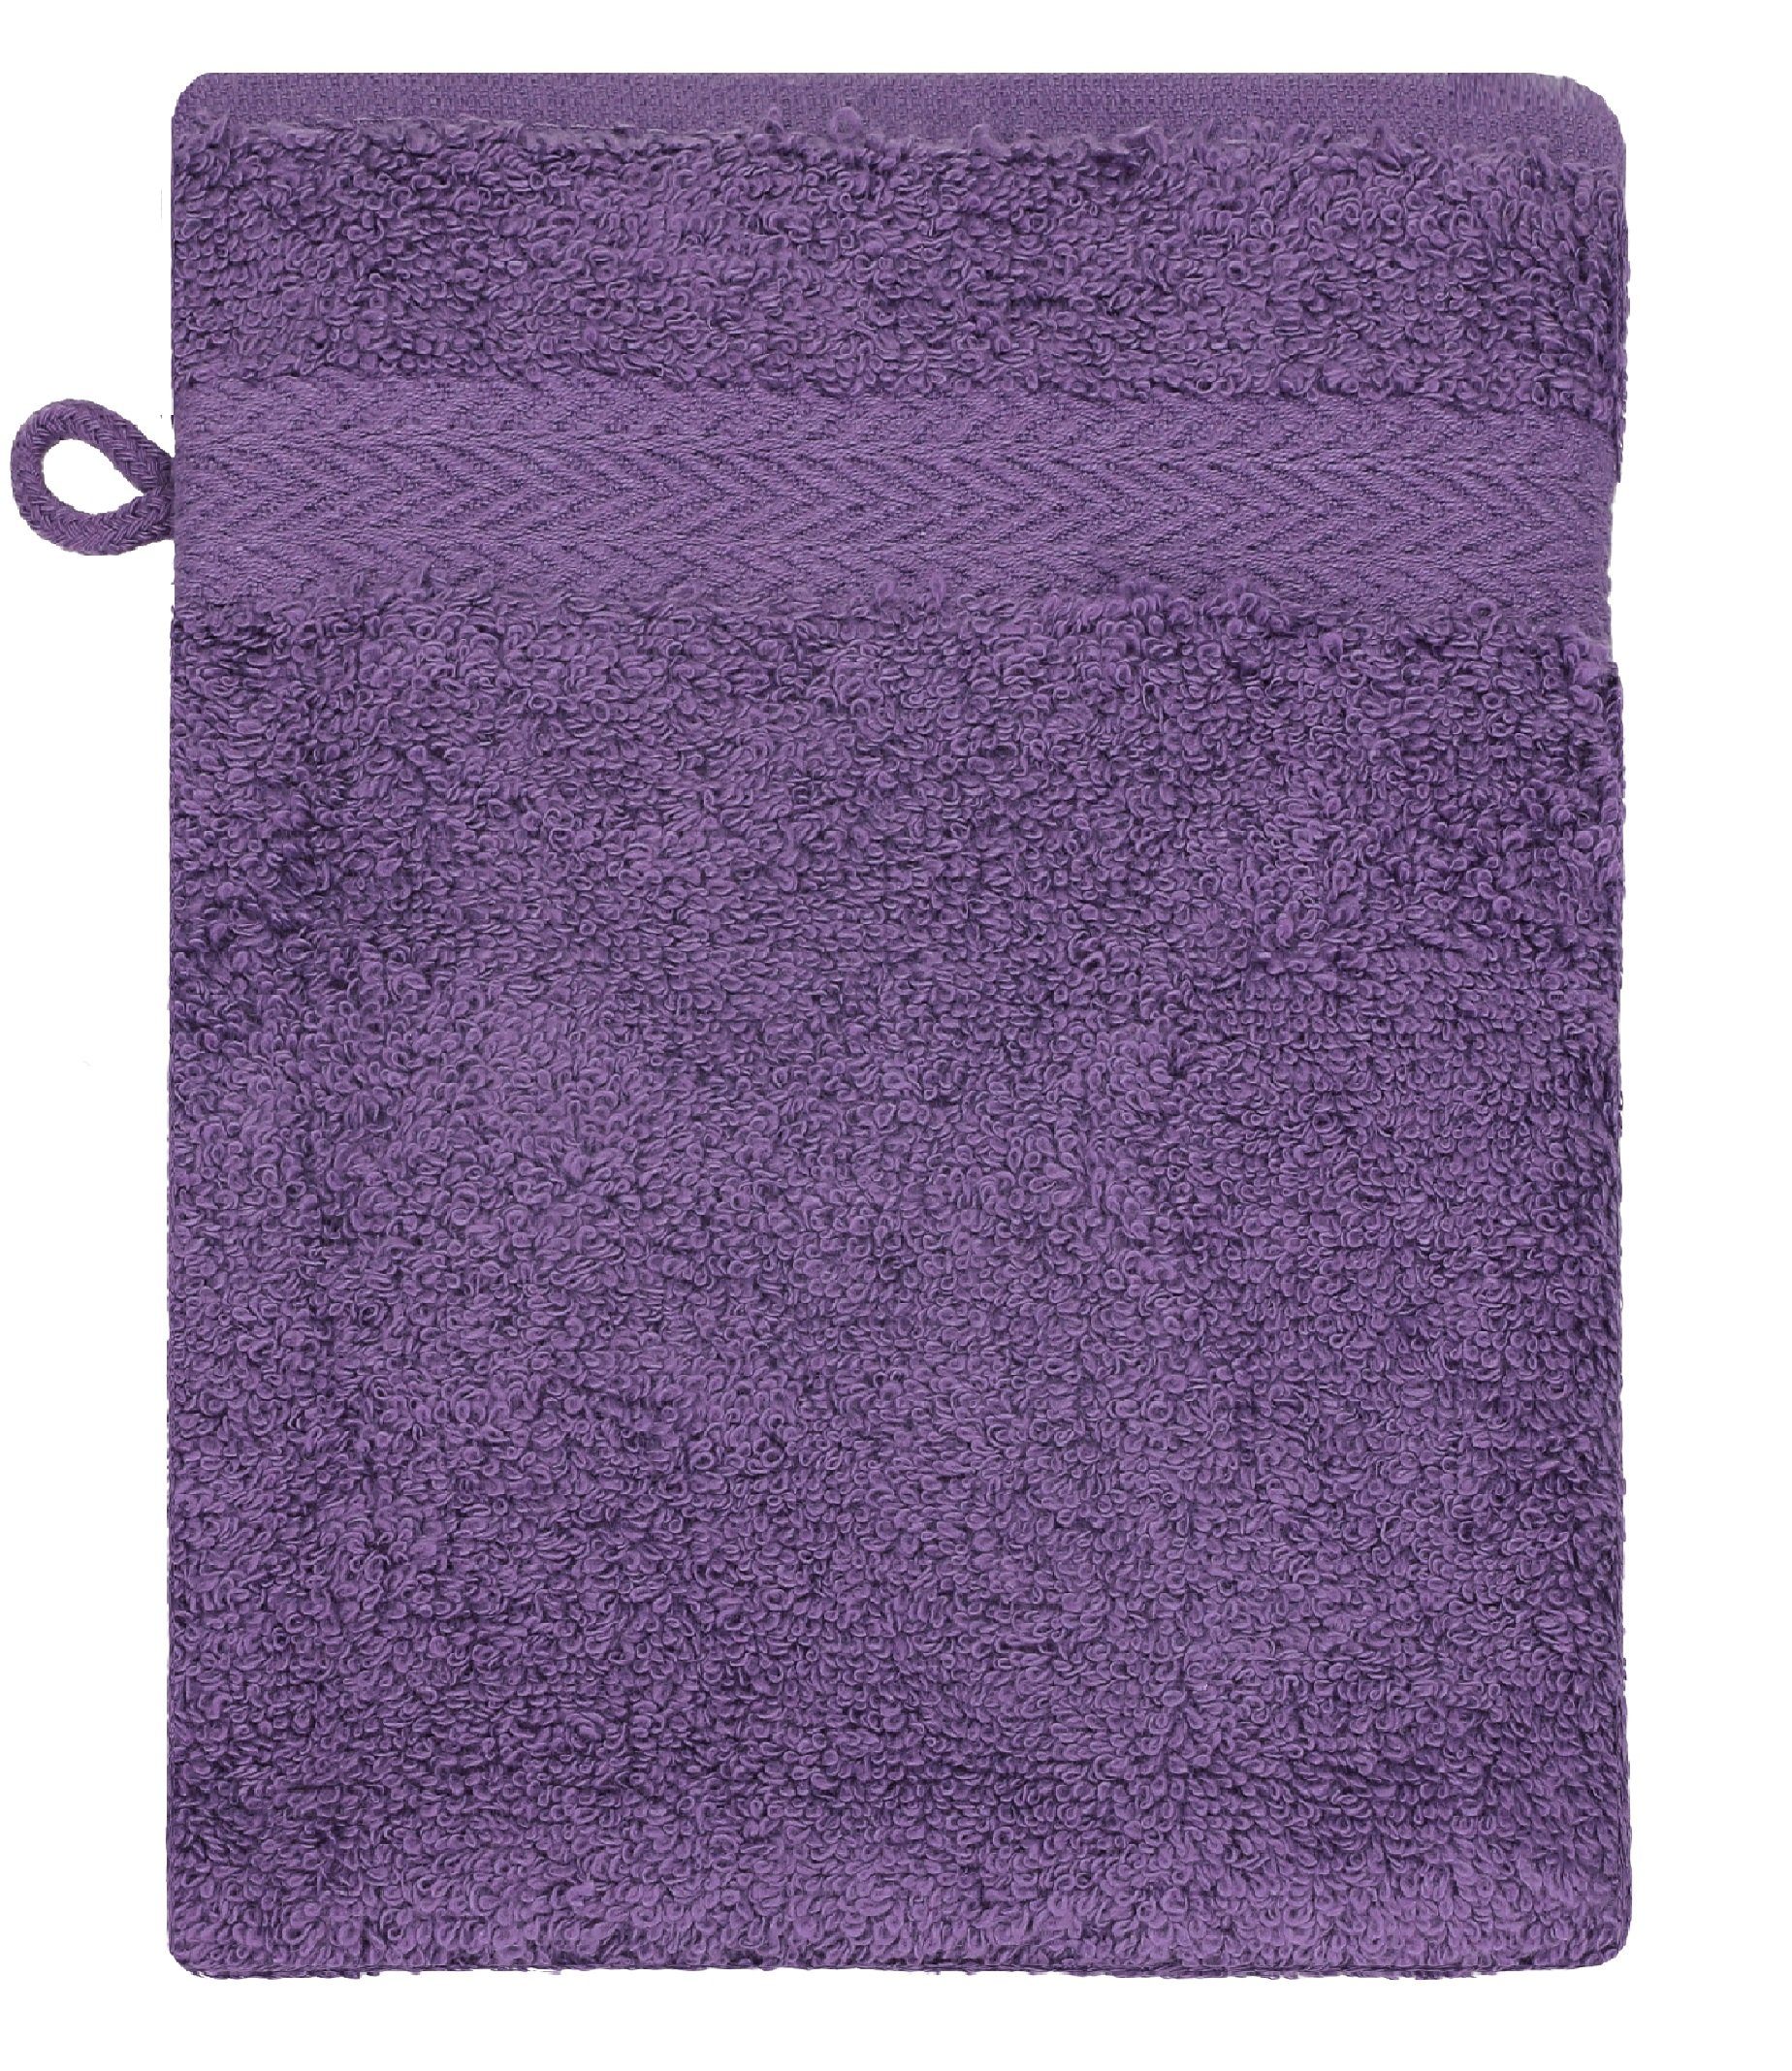 Betz Waschhandschuh Waschhandschuhe Premium Farbe 100% Waschlappen 16x21 Baumwolle lila Set 10 Stück smaragdgrün und cm